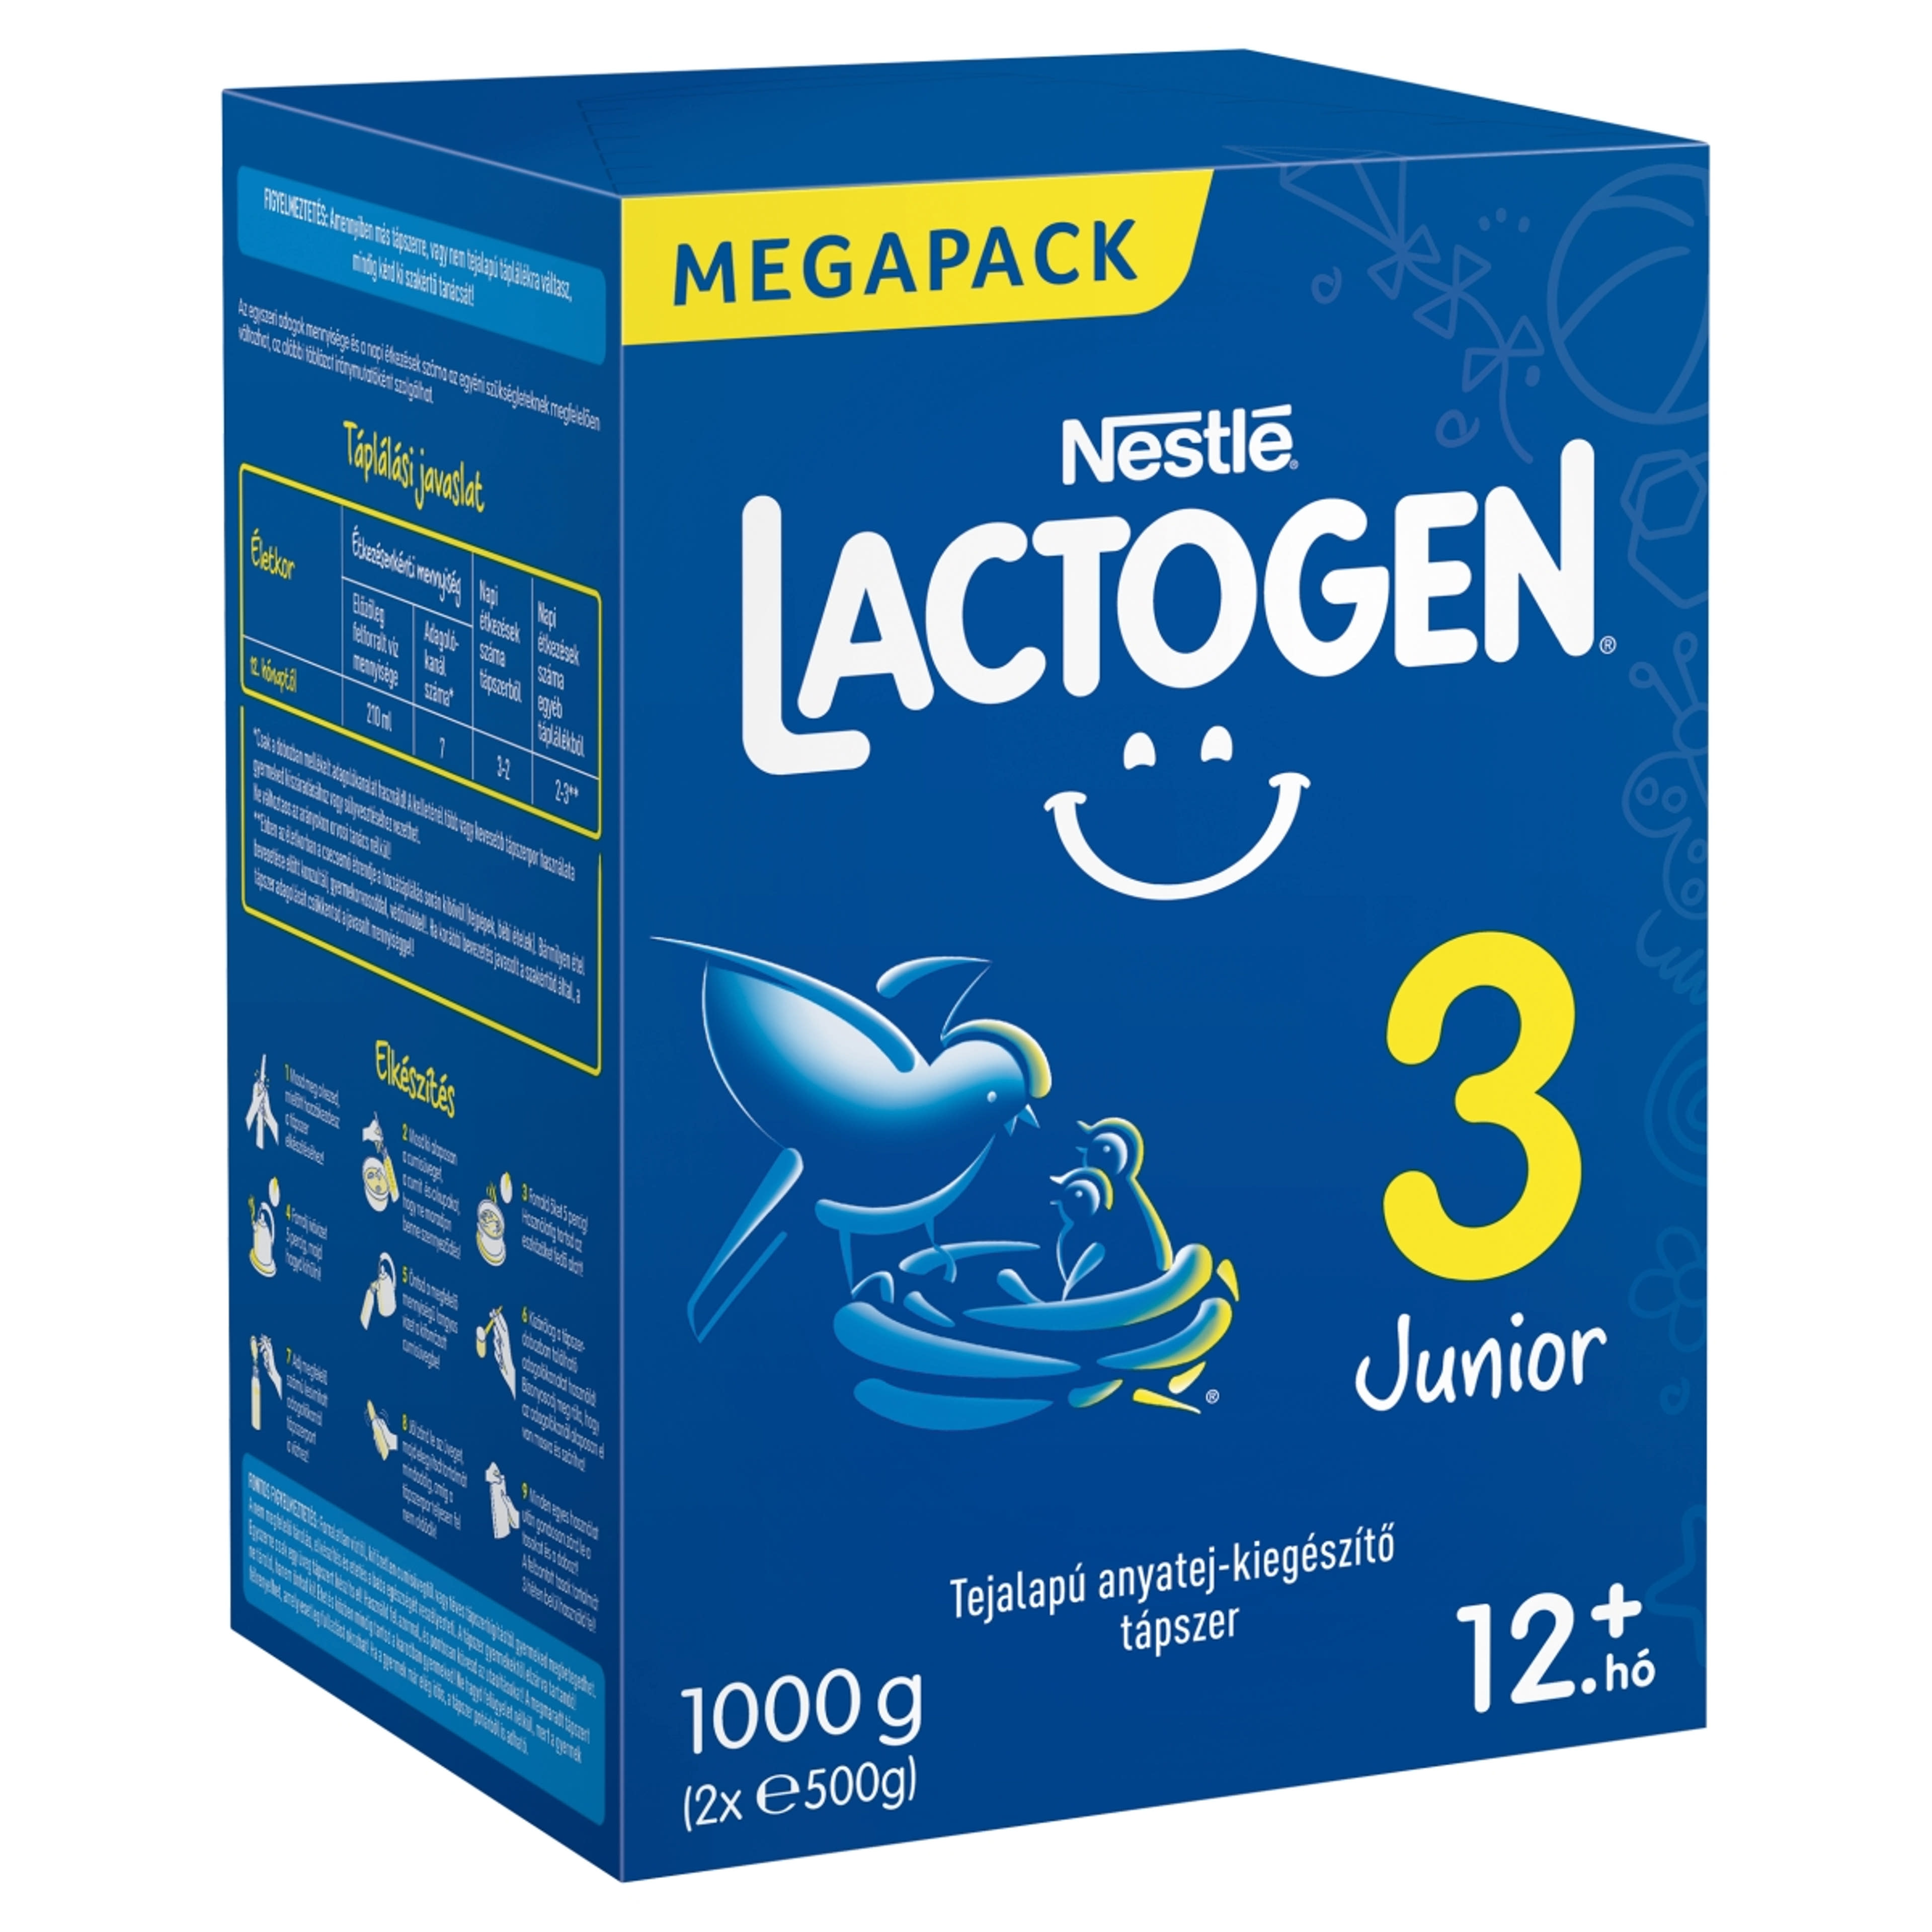 Nestlé Lactogen 3 Junior tápszer 12 hónapos kortól - 1000 g-2